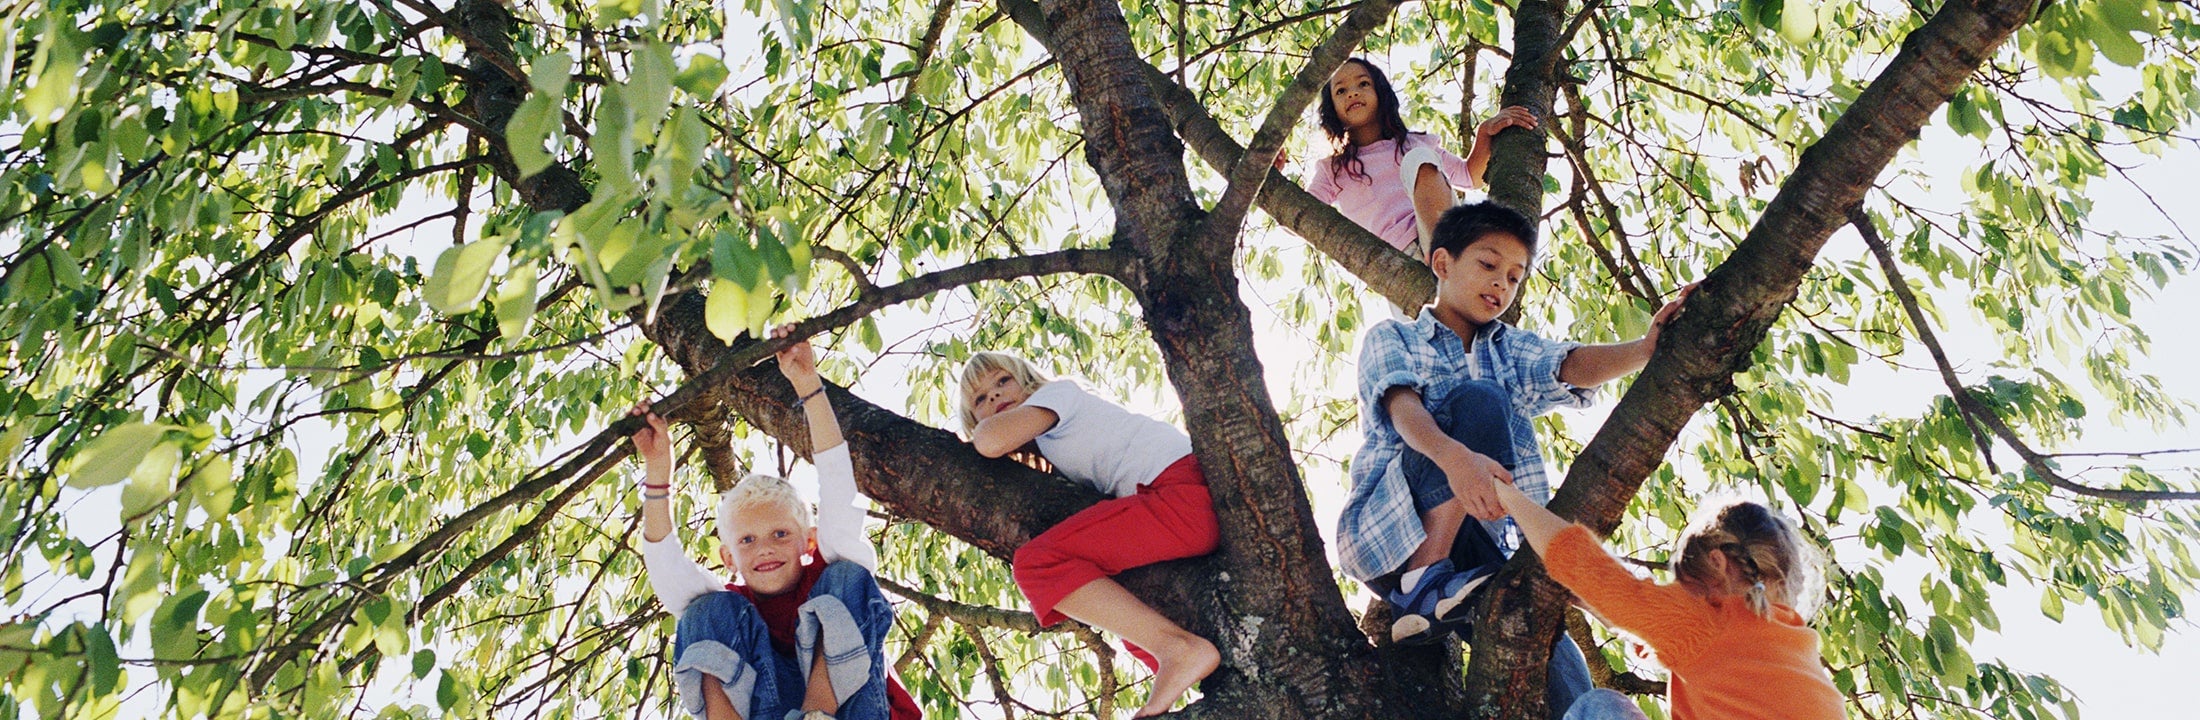 Kinderen klimmen in boom